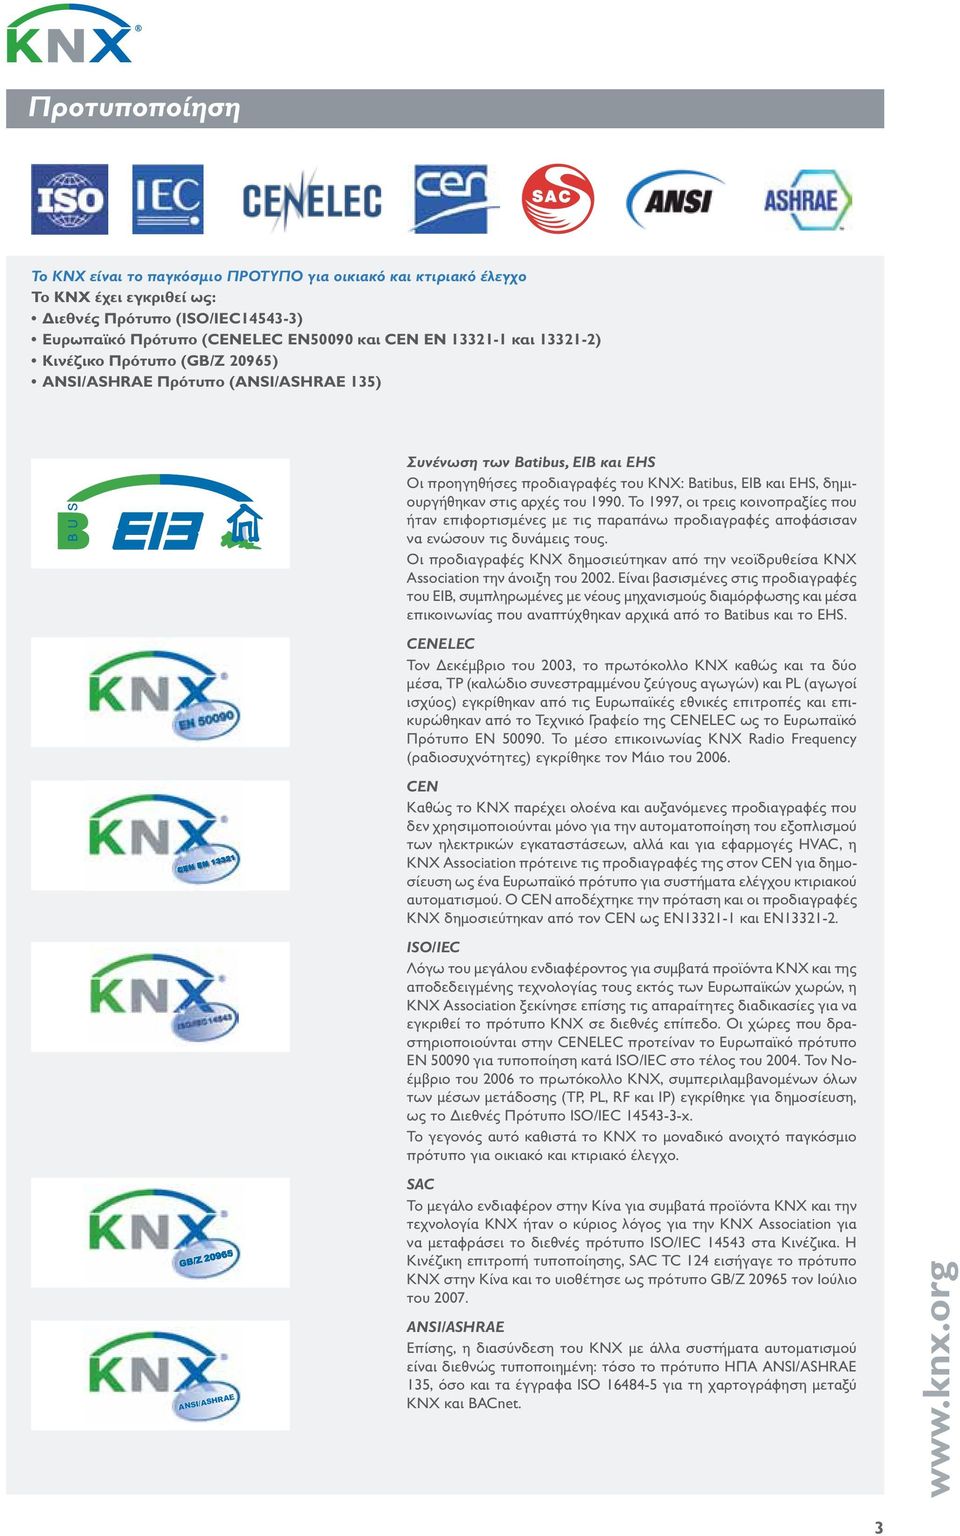 13321-2) Κινέζικο Πρότυπο (GB/Z 20965) ANSI/ASHRAE Πρότυπο (ANSI/ASHRAE 135) Συνένωση των Batibus, EIB και EHS Οι προηγηθήσες προδιαγραφές του KNX: Batibus, EIB και EHS, δημιουργήθηκαν στις αρχές του